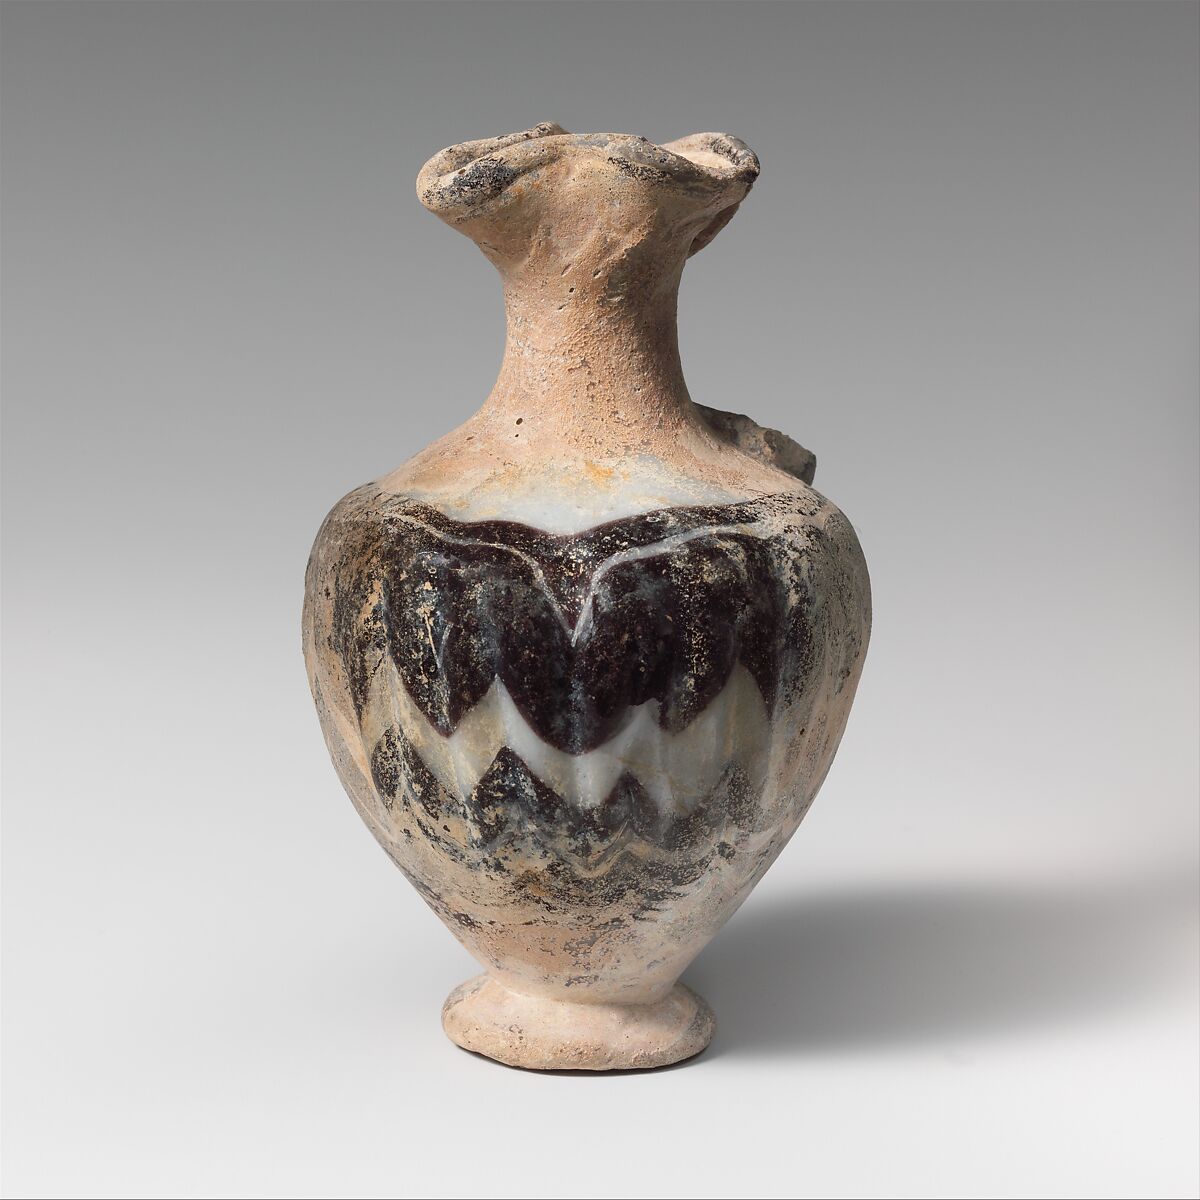 Glass oinochoe (perfume jug), Glass, Greek, Eastern Mediterranean 